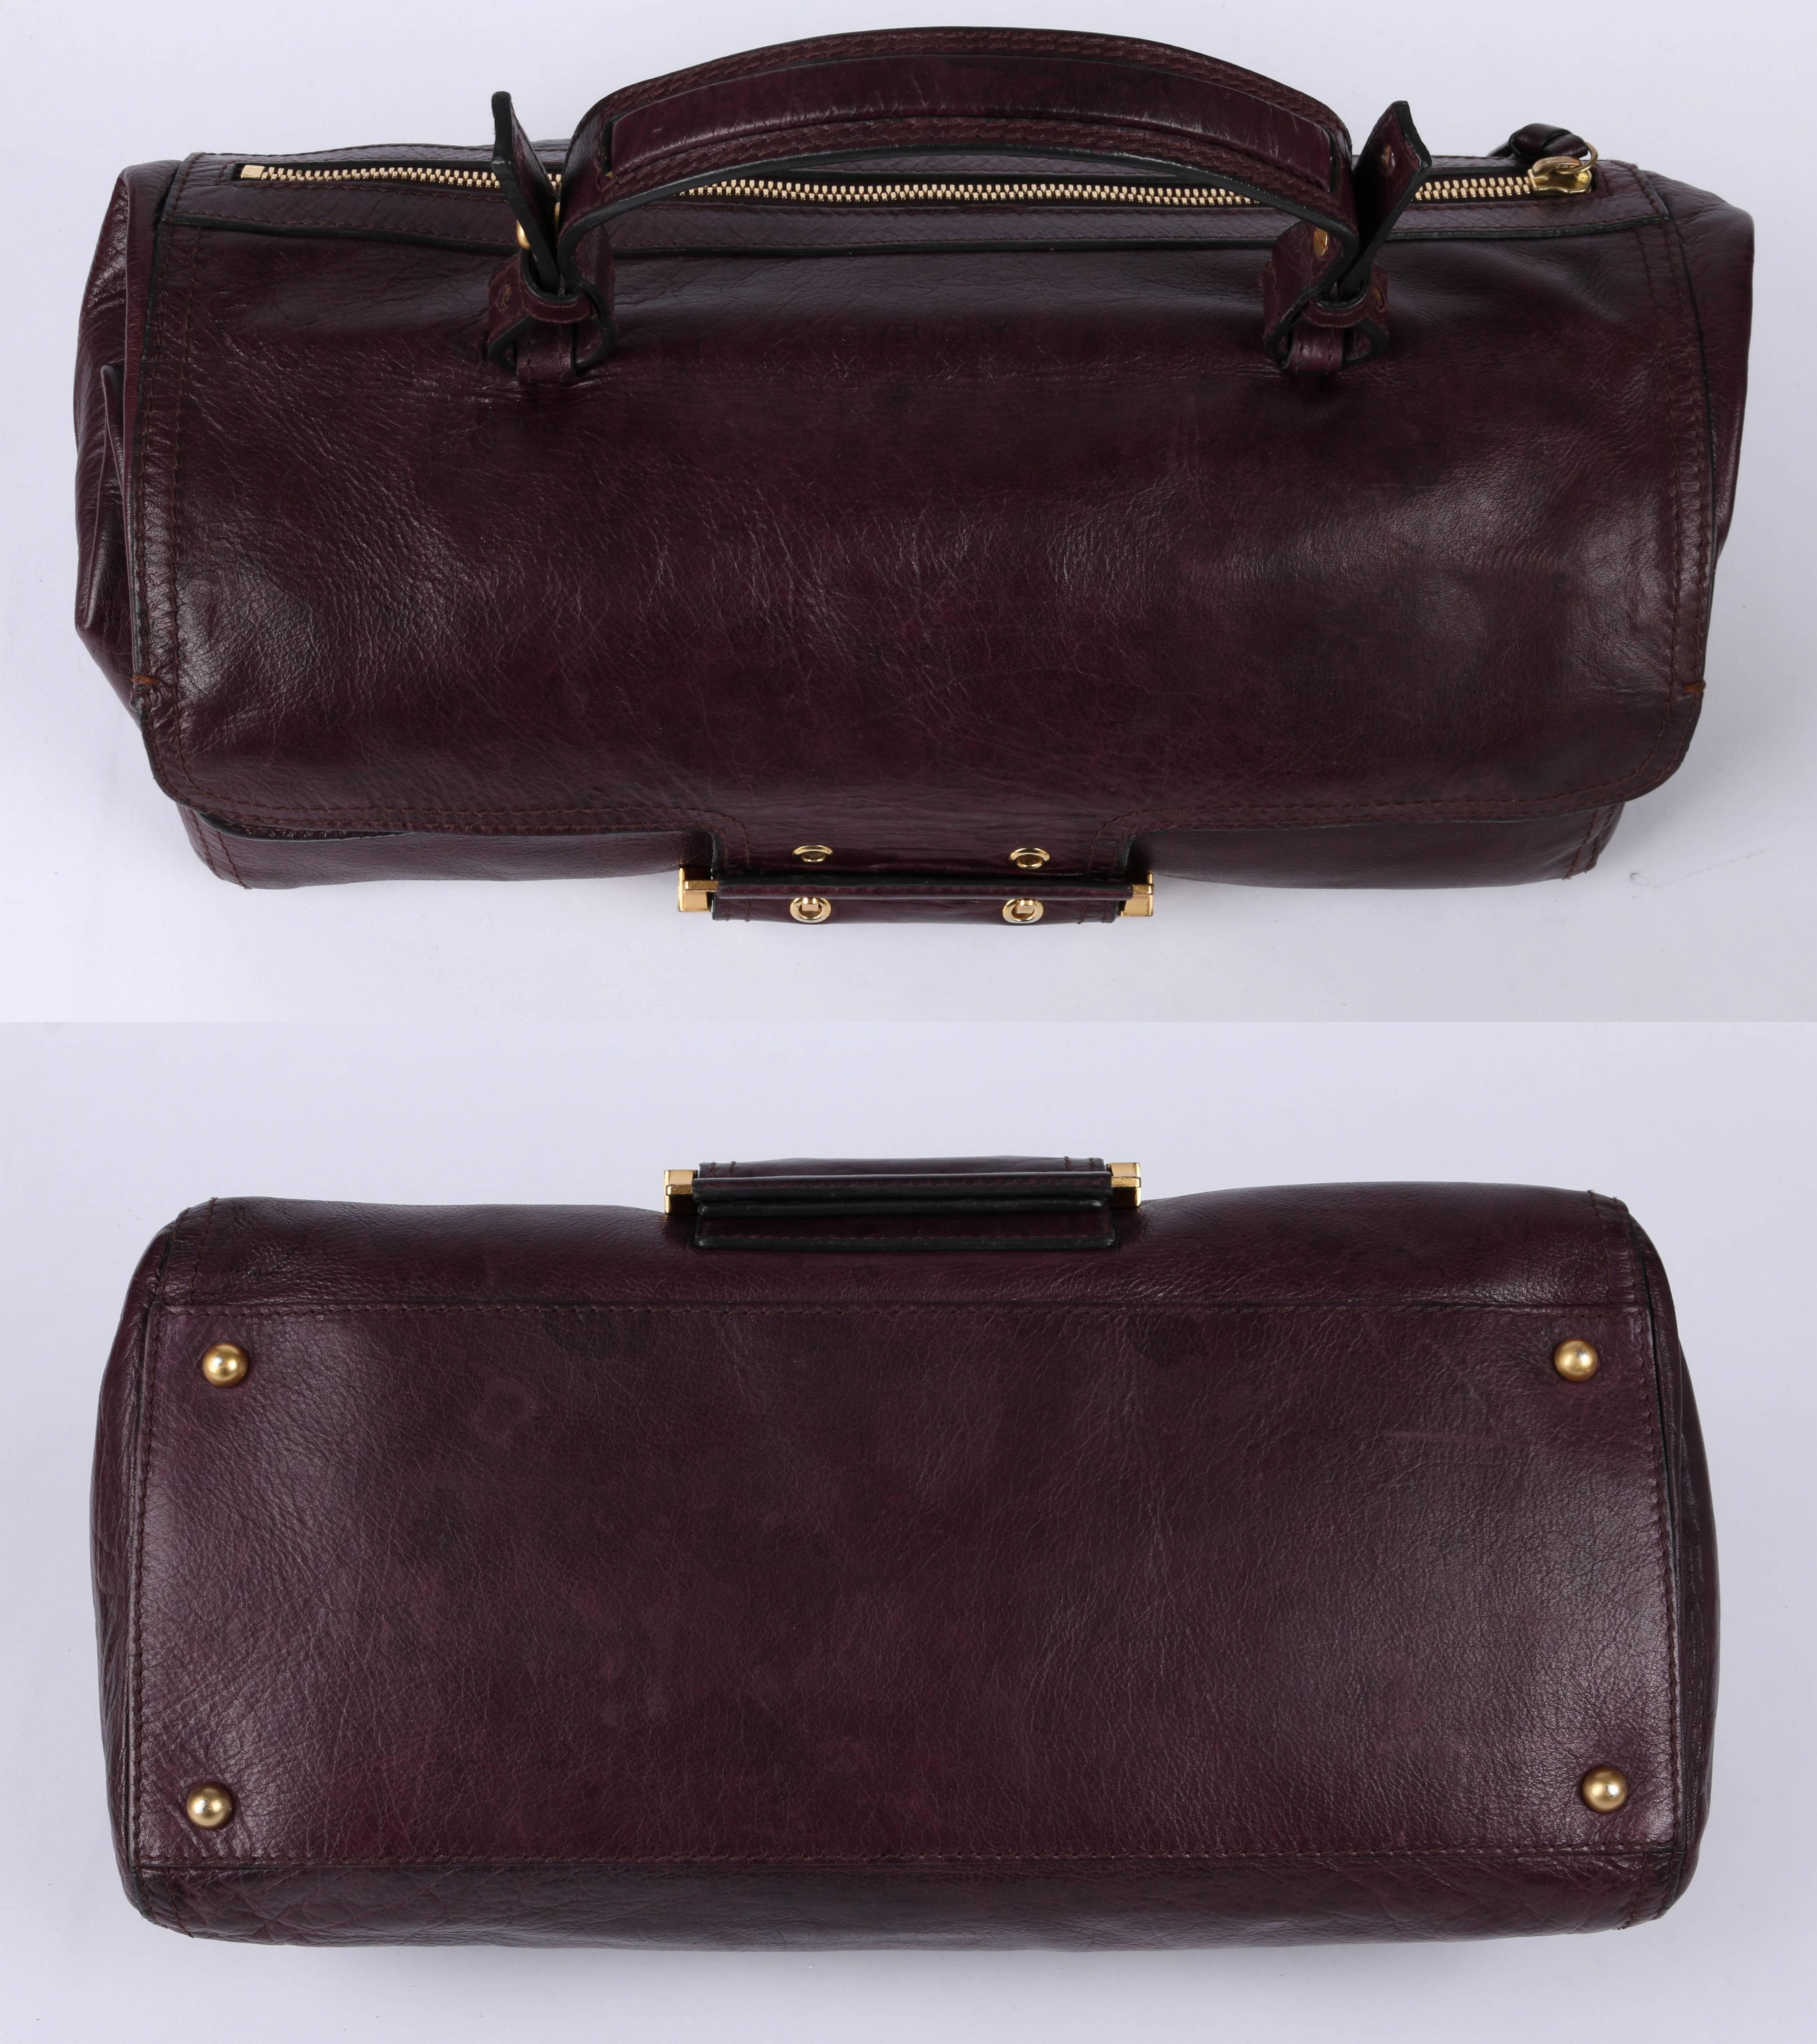 plum leather purse